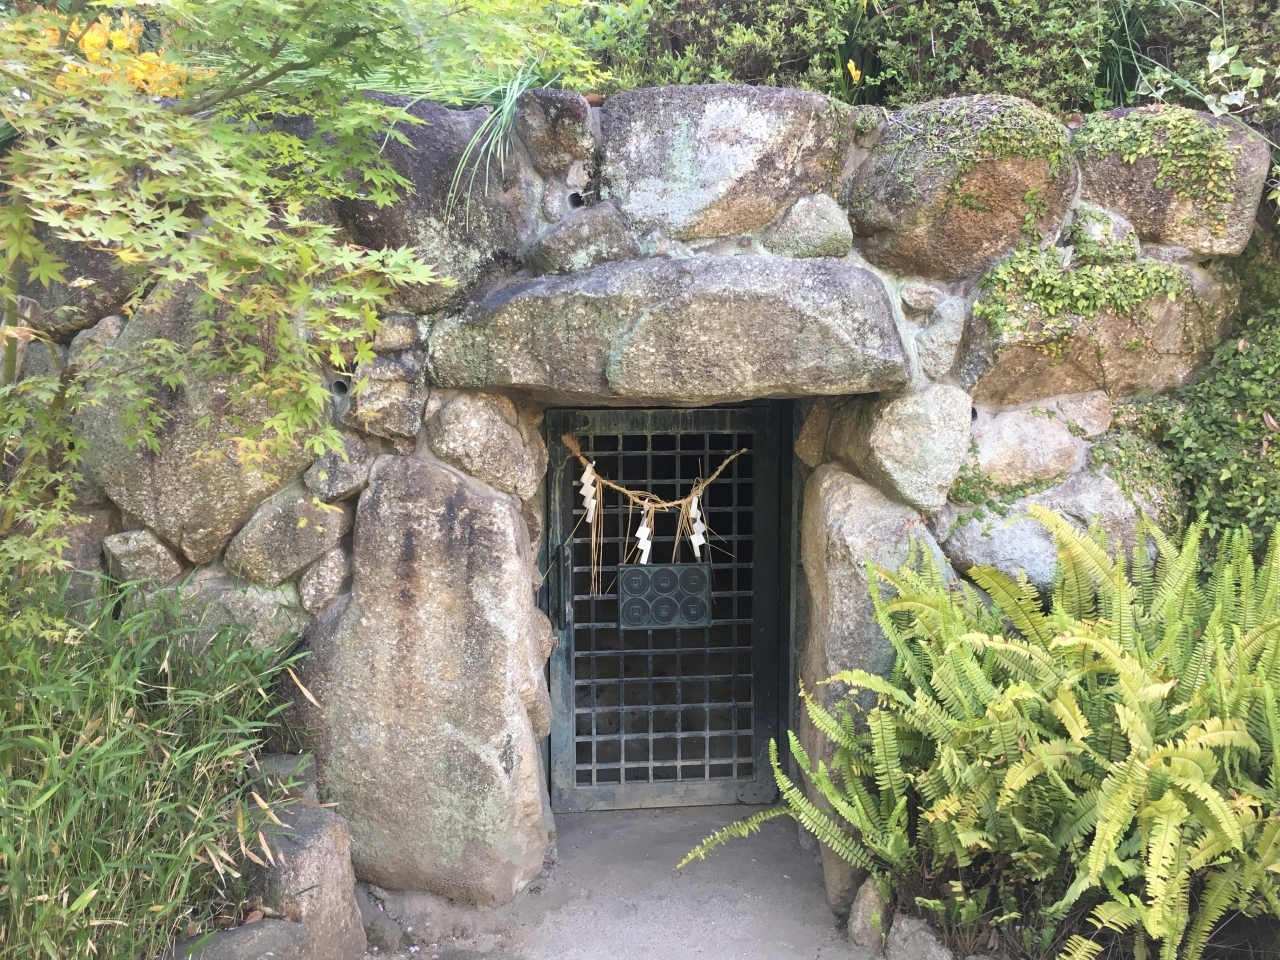 この三光神社には真田の抜け穴と伝わる、地下道のようなものが残っています。

真田幸村公がここから大坂城まで続く抜け道を作ったと言われています。
